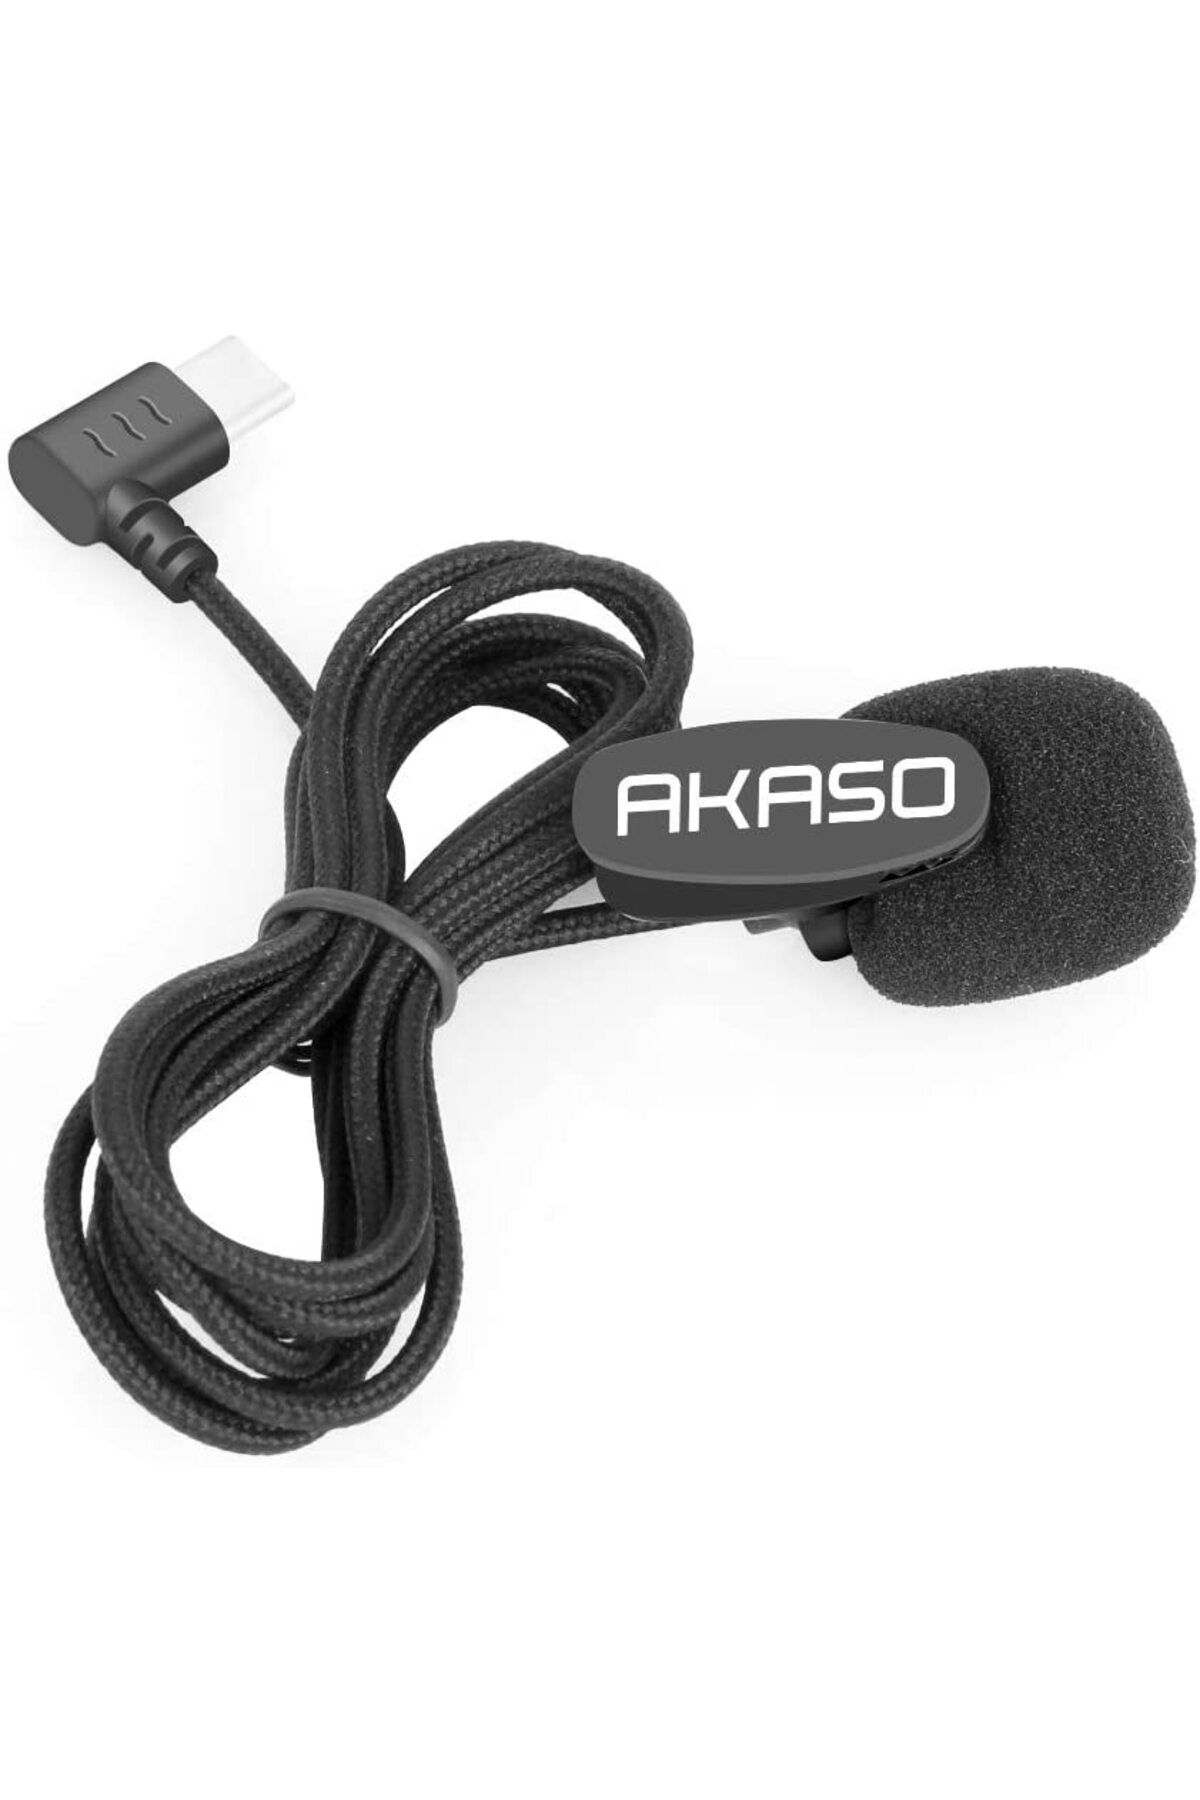 AKASO Type-c Girişli Aksiyon Kamera Mikrofonu (BRAVE 7 & BRAVE 8 UYUMLU)